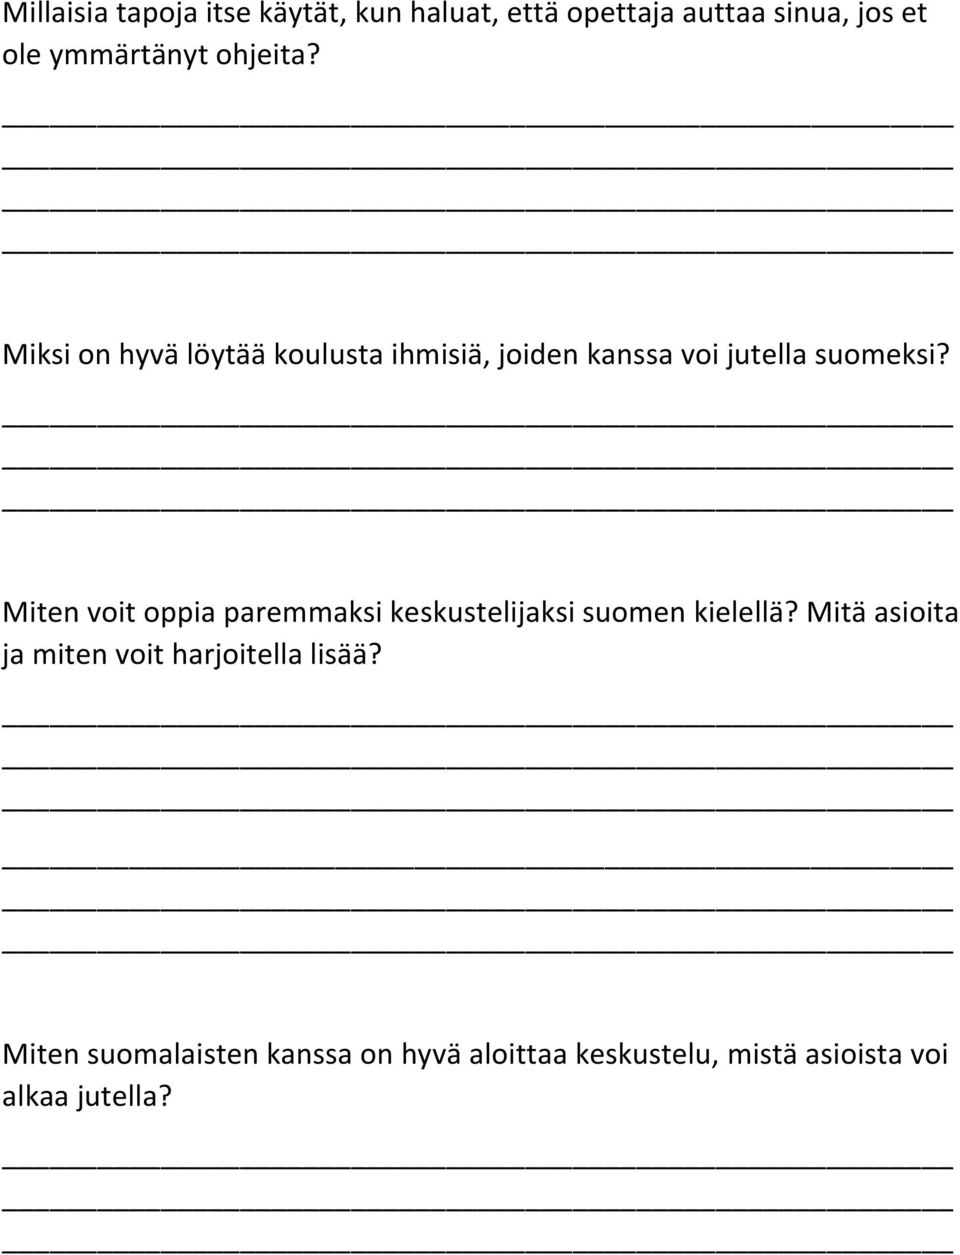 Miten voit oppia paremmaksi keskustelijaksi suomen kielellä?